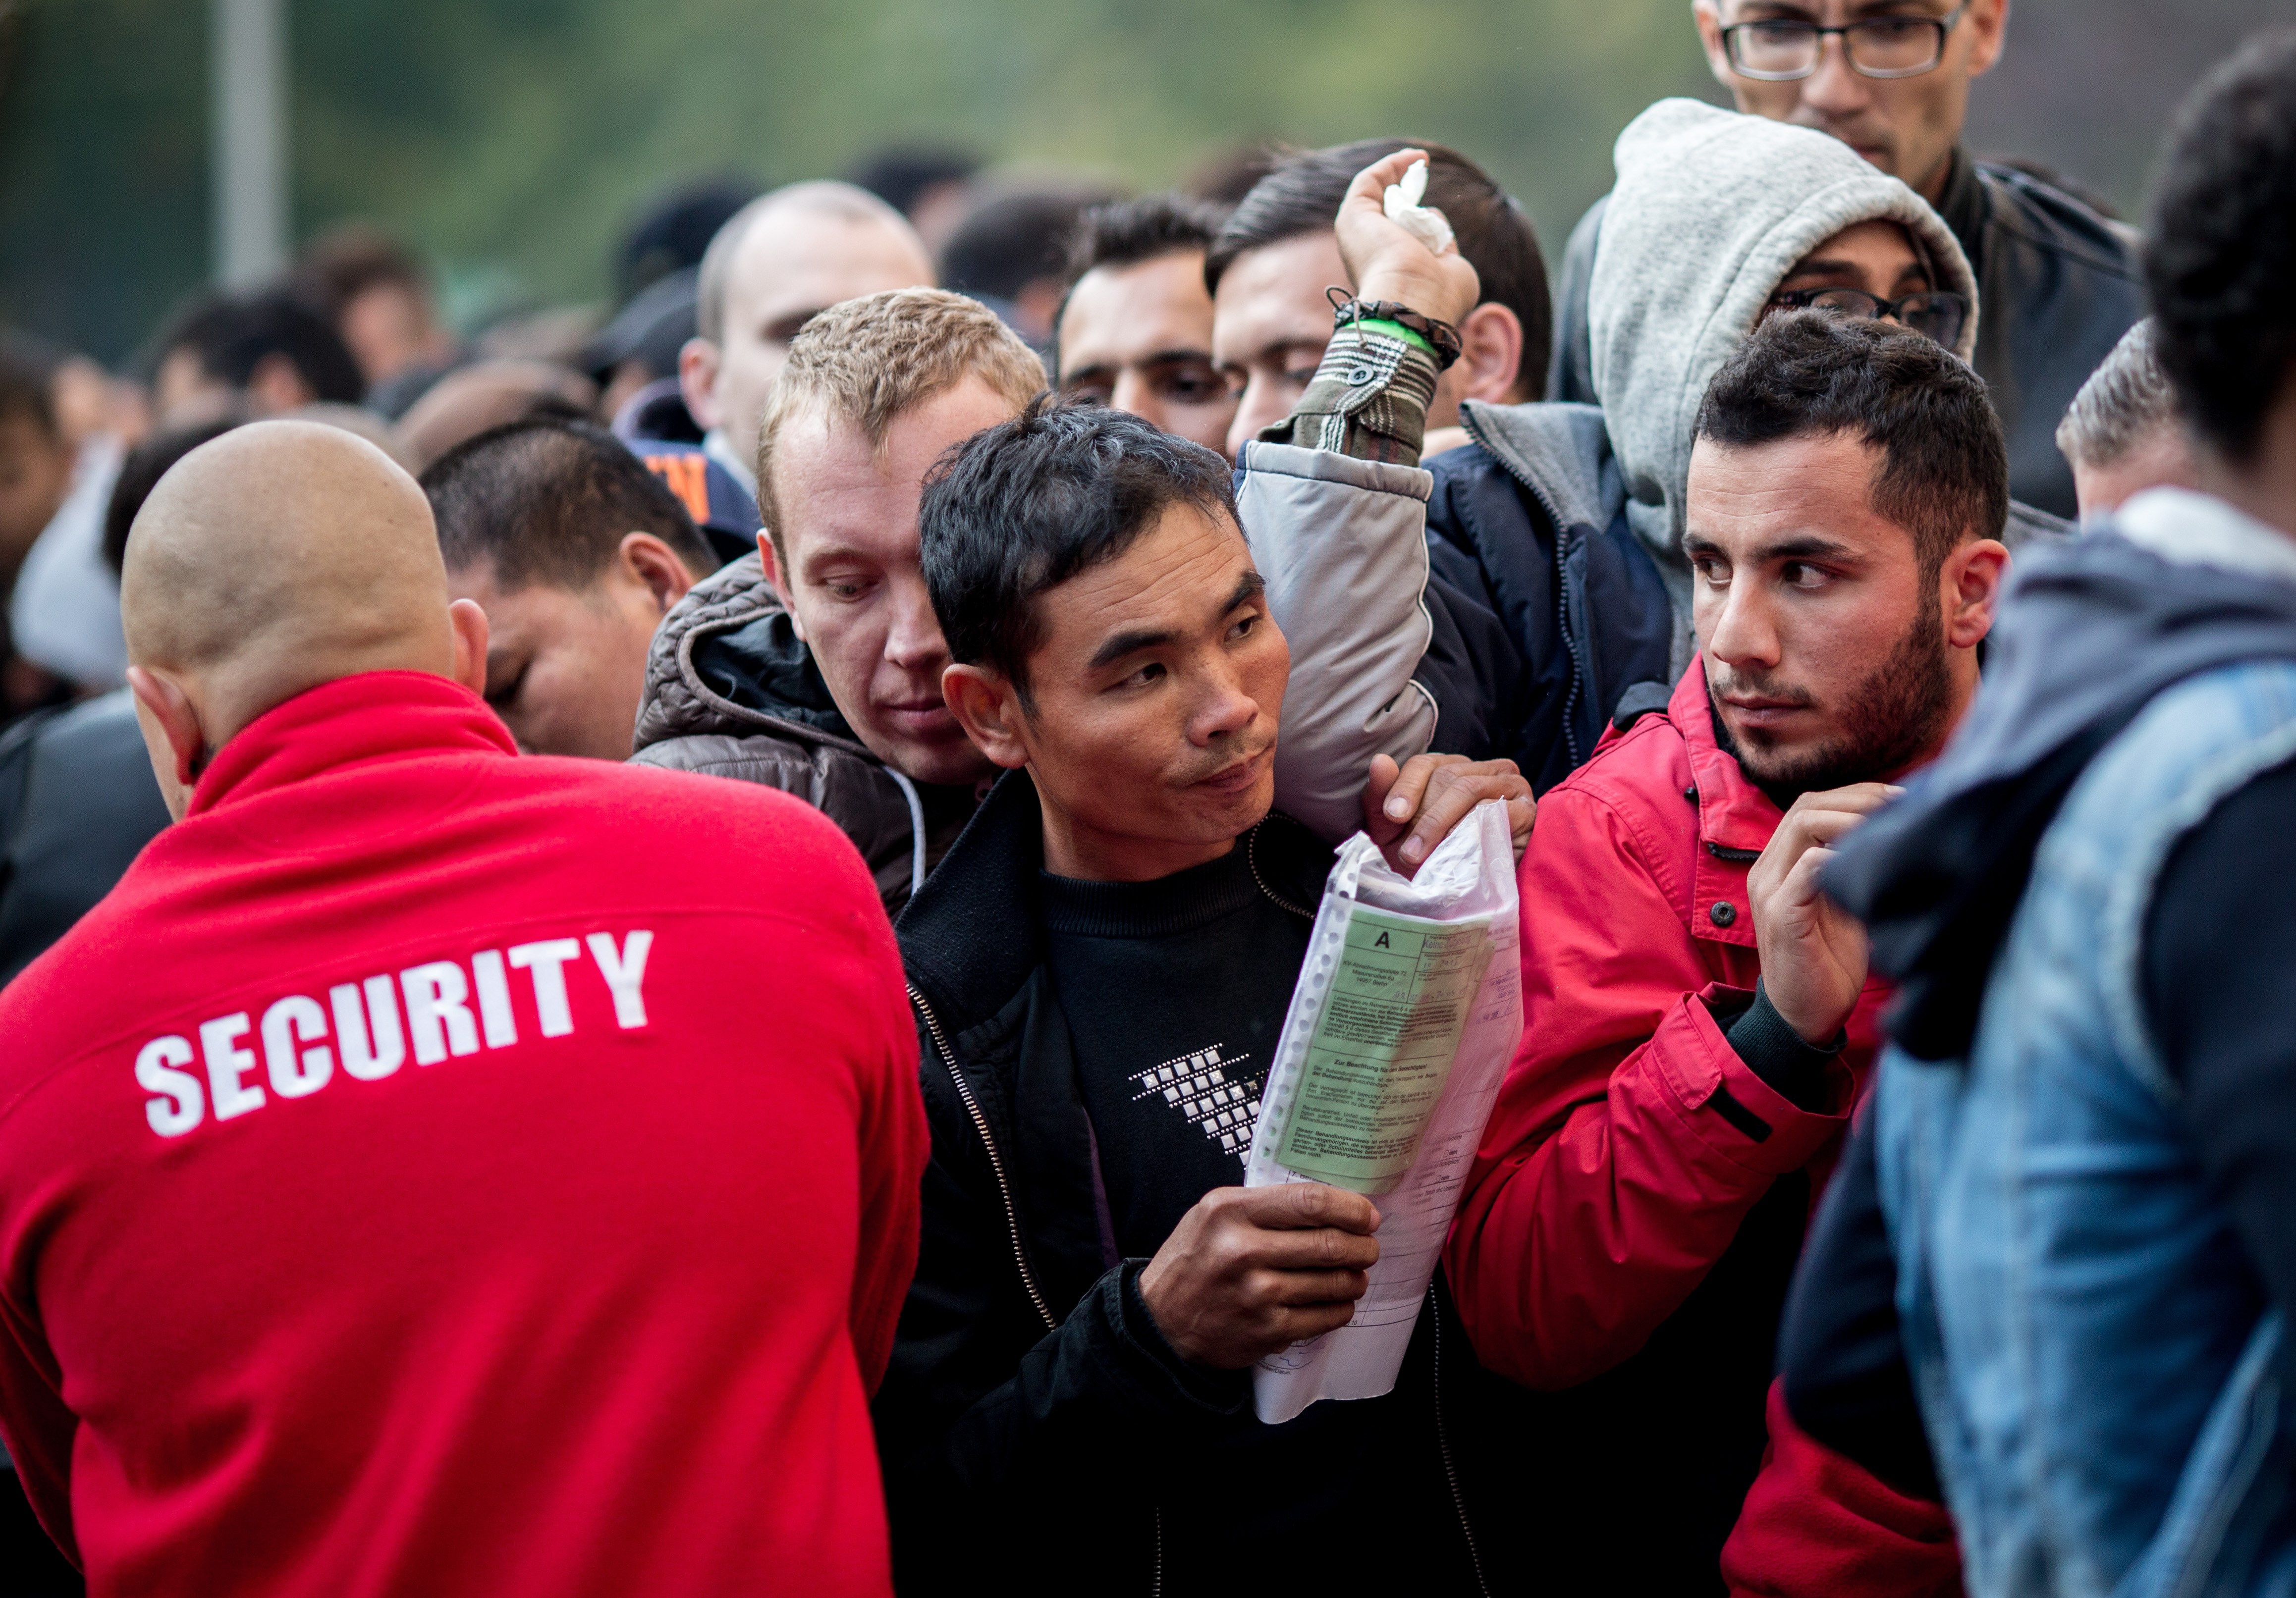 Erheblich mehr Flüchtlinge: Unions-Politiker fordern Grenzschließung und Aufnahmestopp